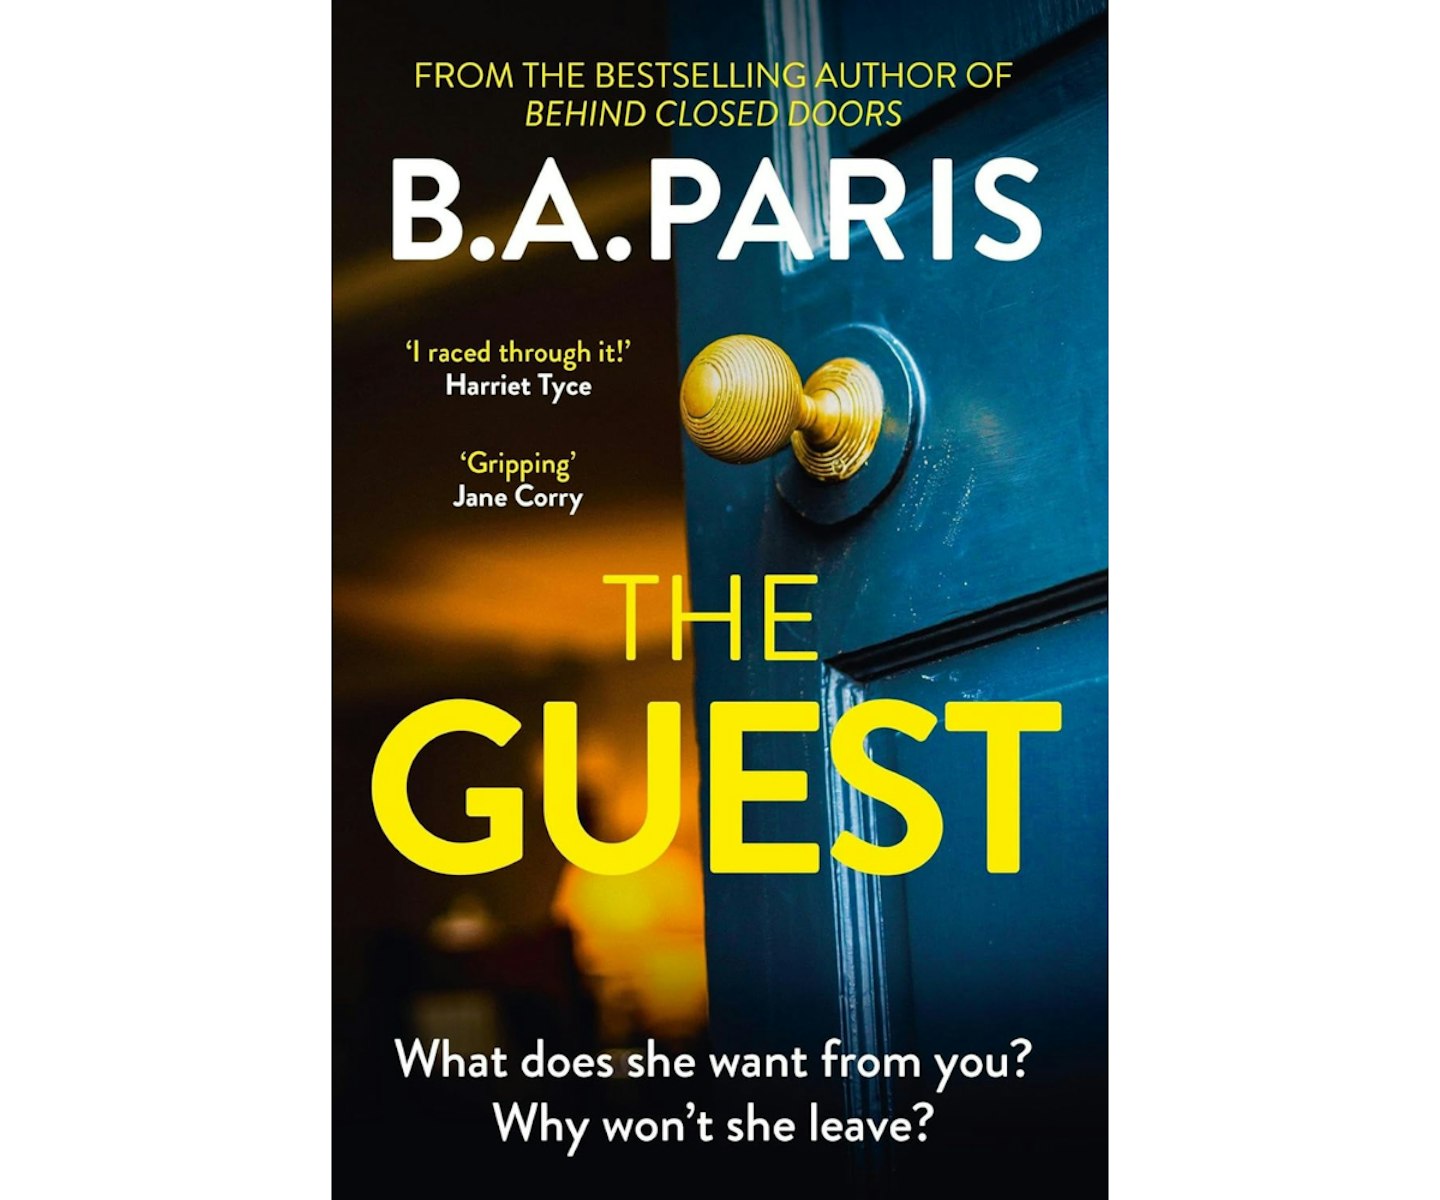 The Guest by B A Paris